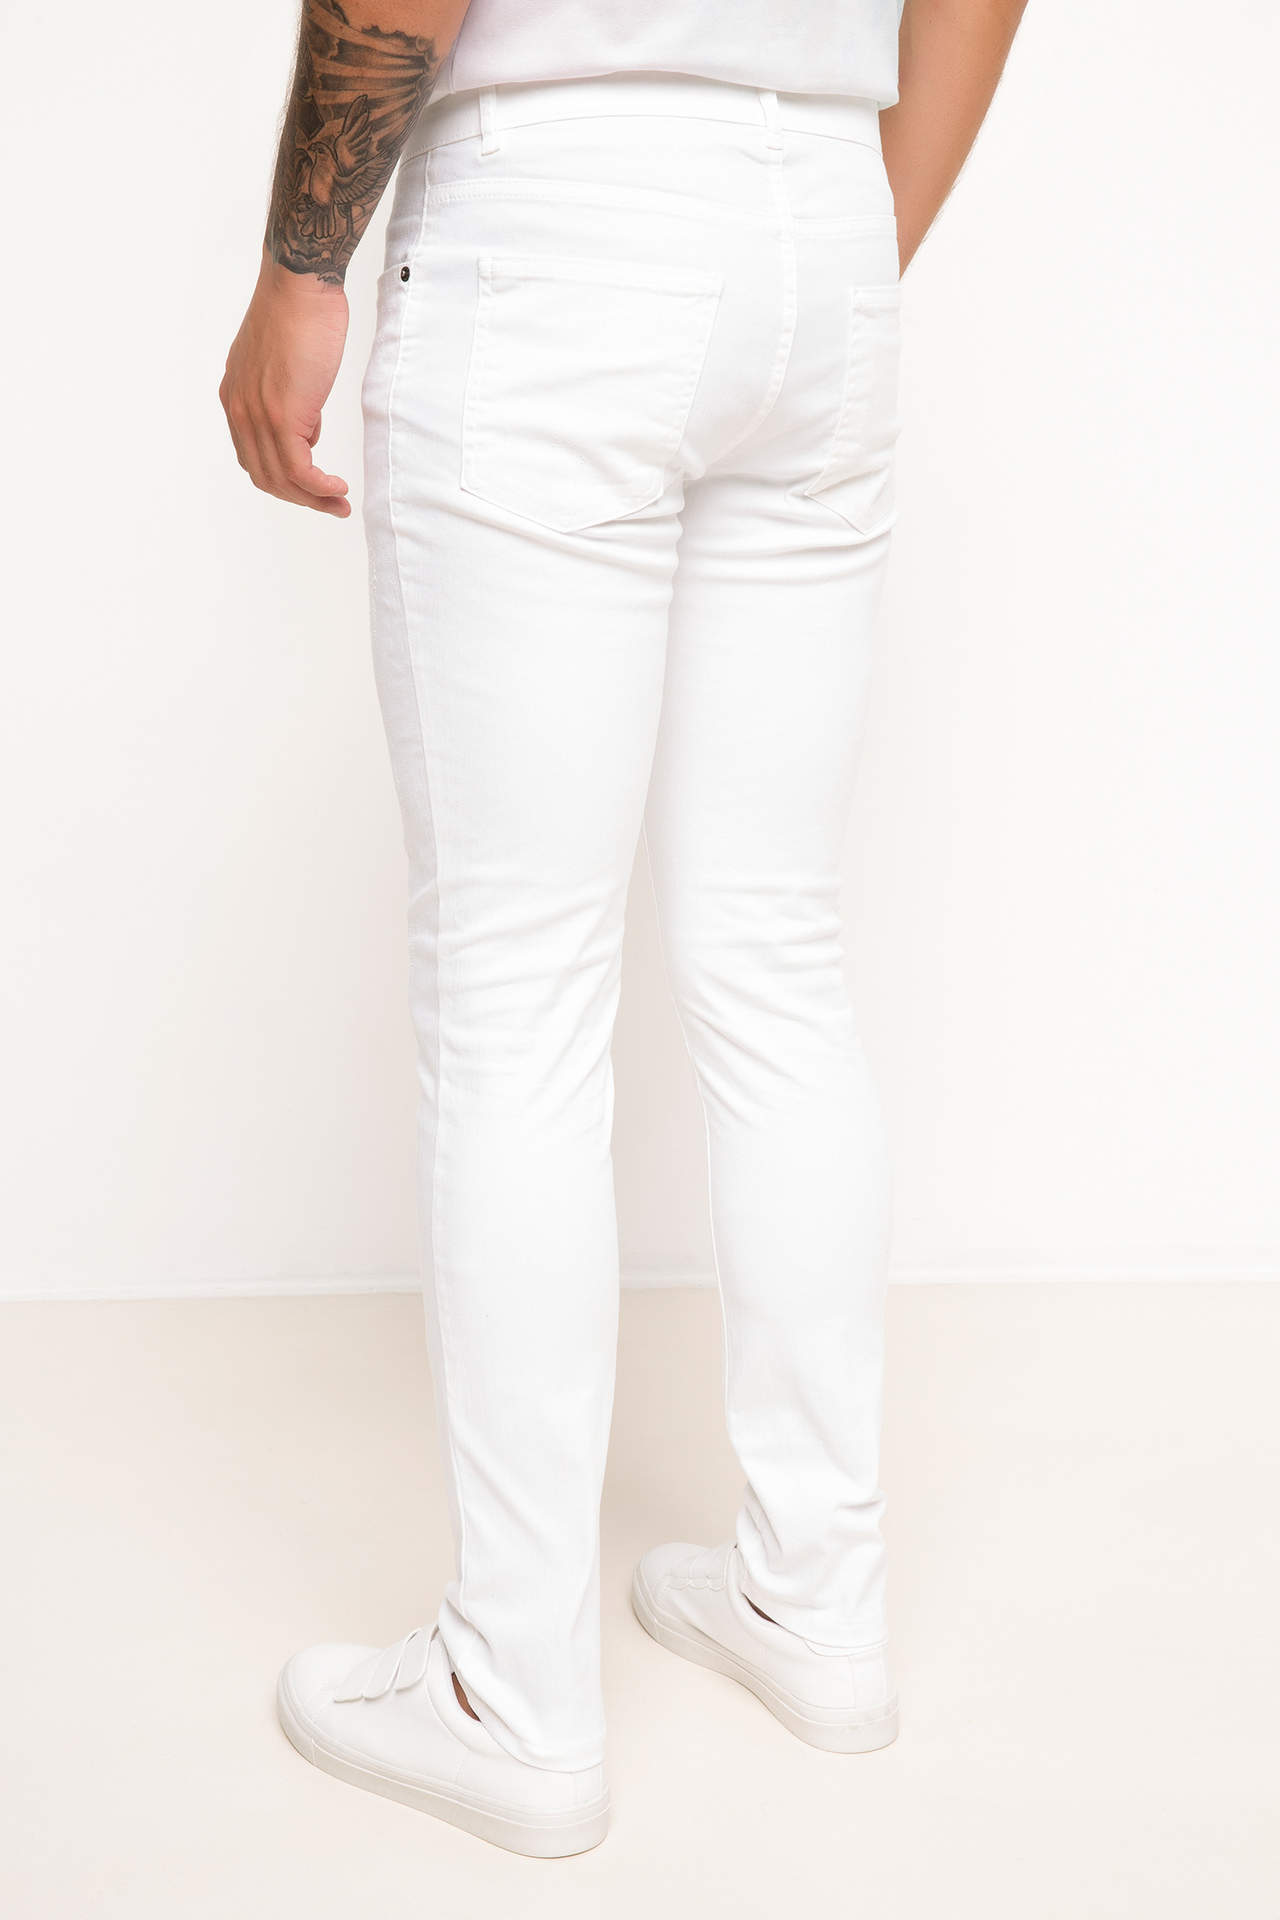 DeFacto Fashion Denim Pants For Men's Elastic White Jean Trousers Male Casual Skinny Simple Long Pant Mens Autumn - H9653AZ17HS